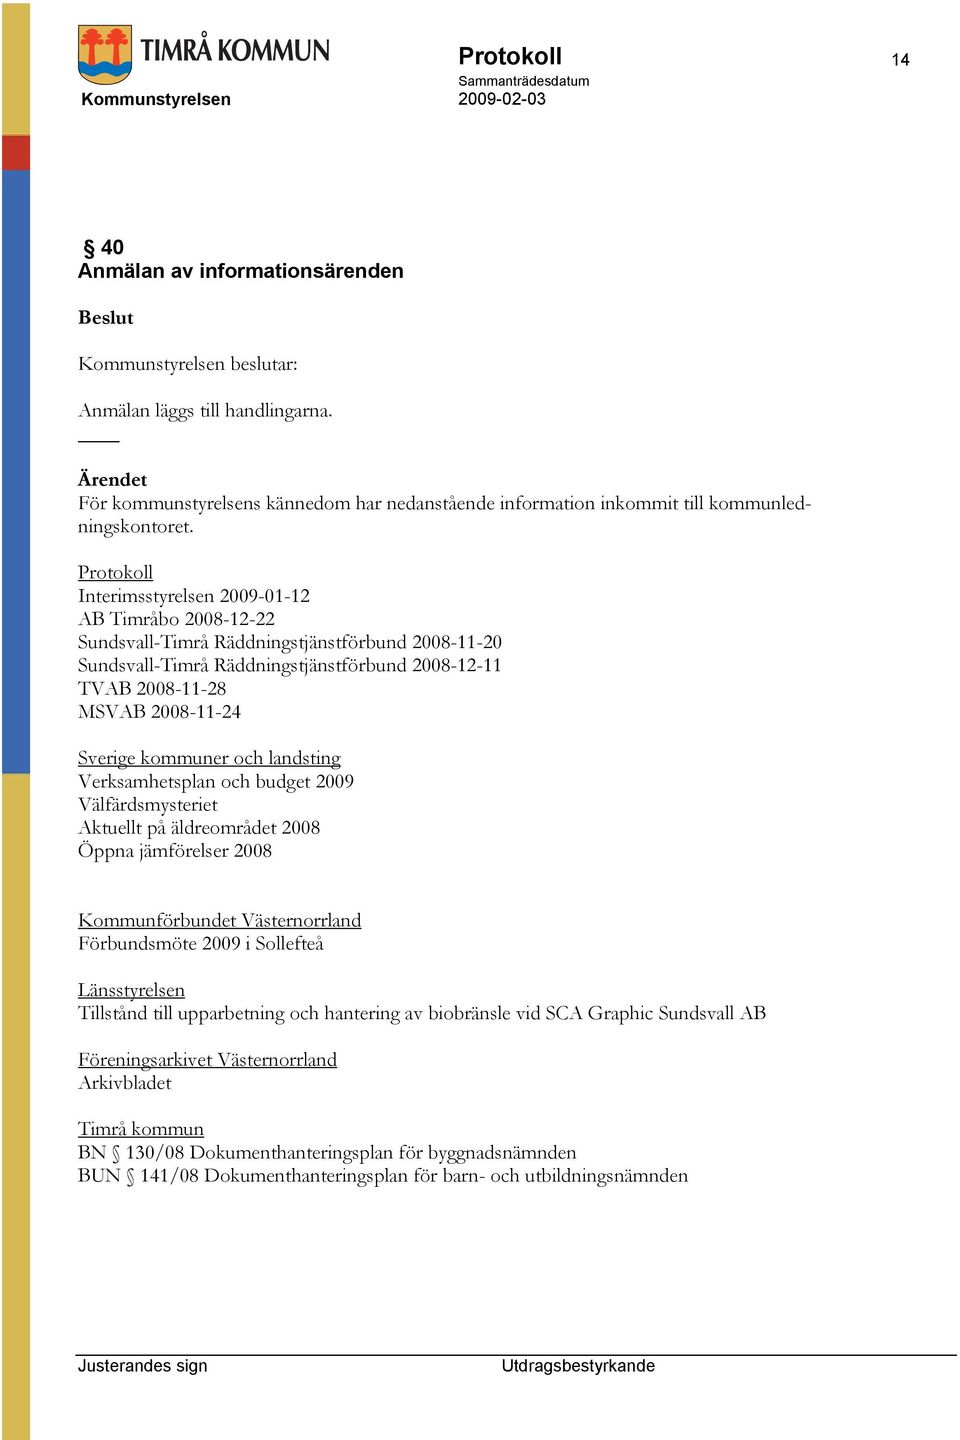 Protokoll Interimsstyrelsen 2009-01-12 AB Timråbo 2008-12-22 Sundsvall-Timrå Räddningstjänstförbund 2008-11-20 Sundsvall-Timrå Räddningstjänstförbund 2008-12-11 TVAB 2008-11-28 MSVAB 2008-11-24